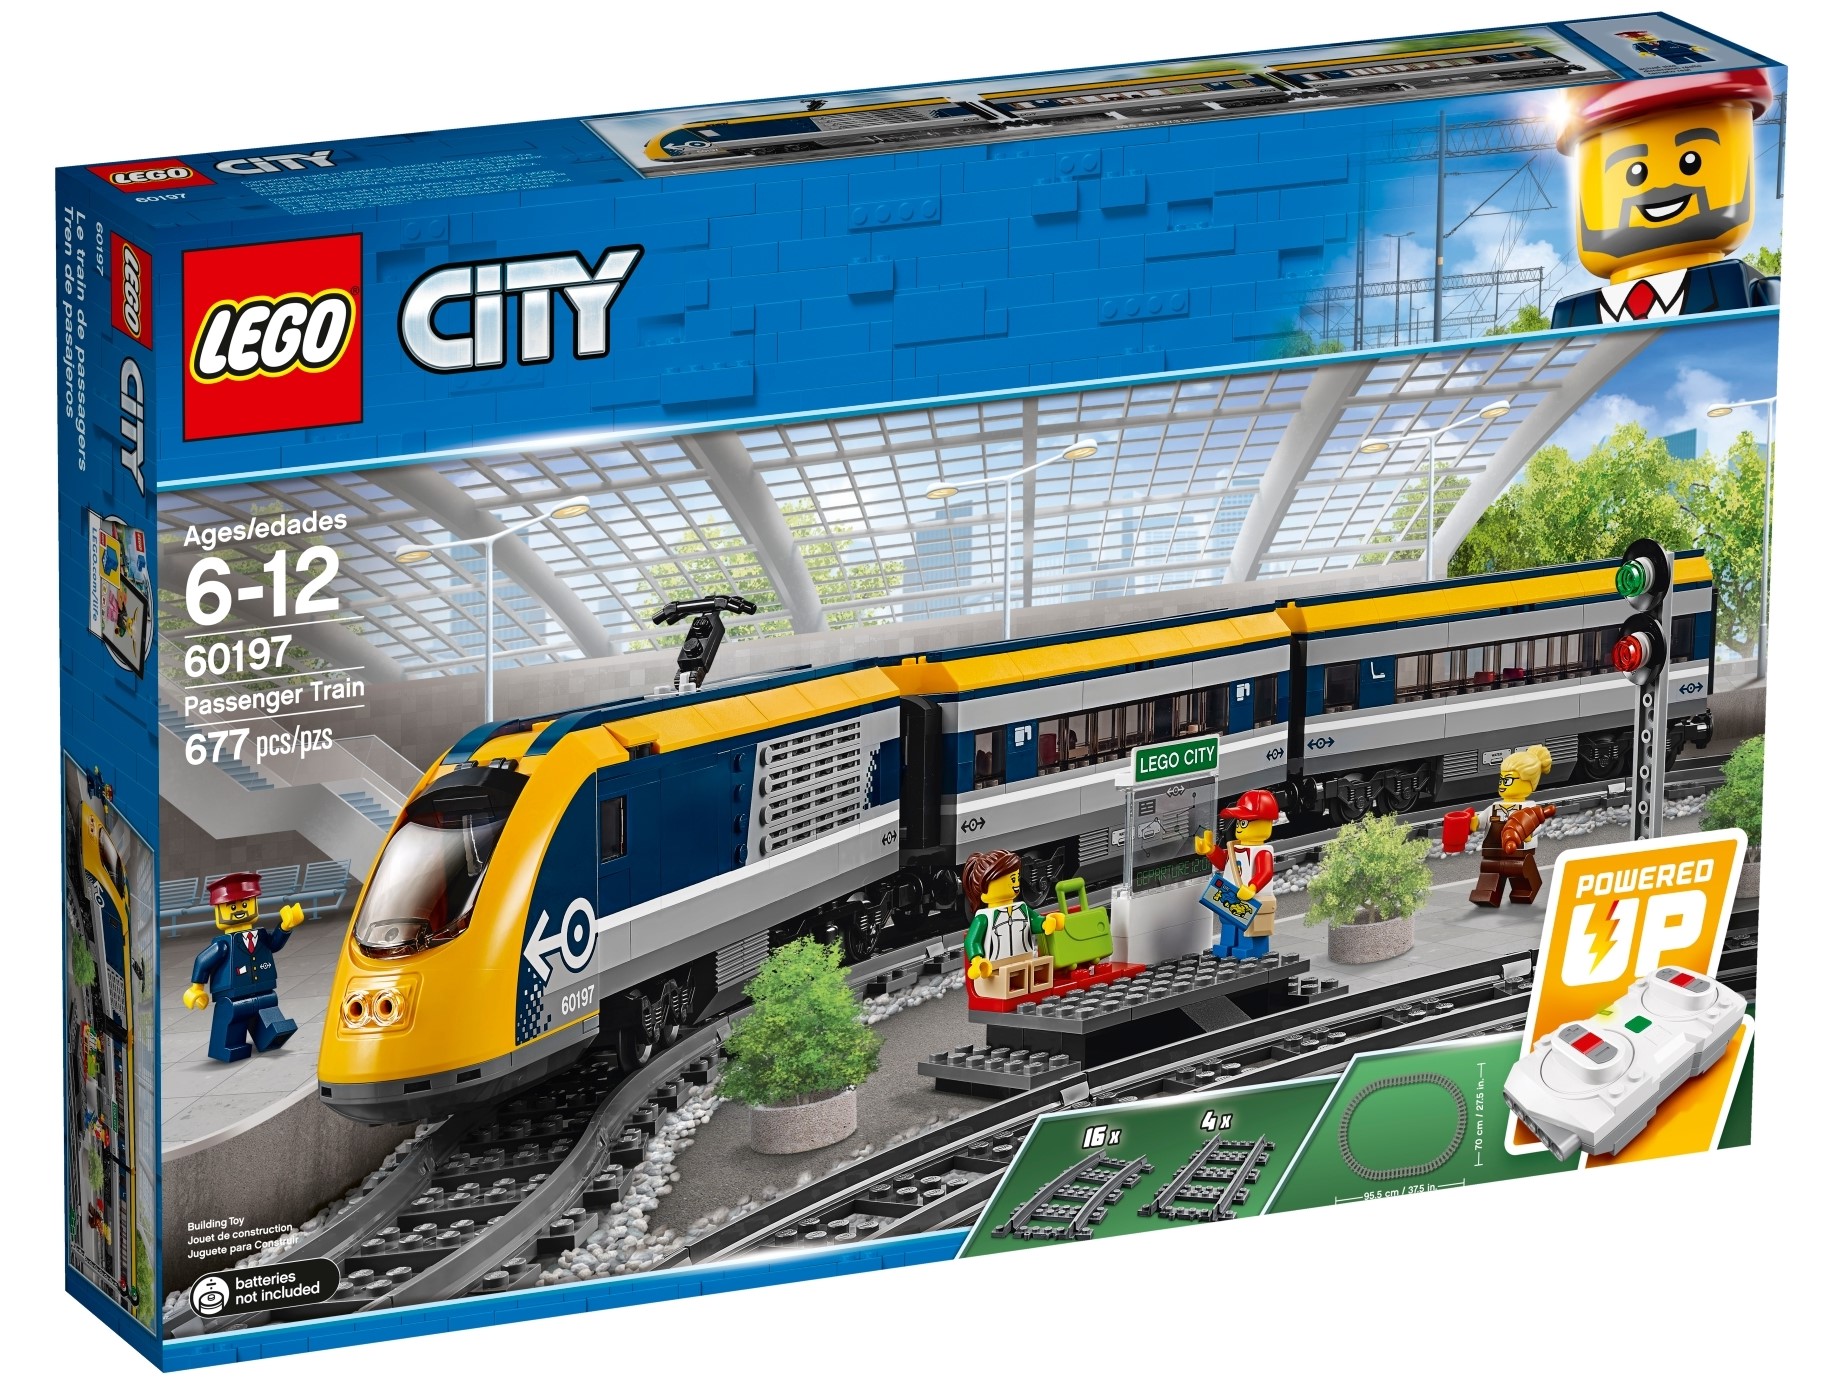 Remote Powered Up NEW 673419281423 Lego City 60197 Passenger Train Motorized Engine